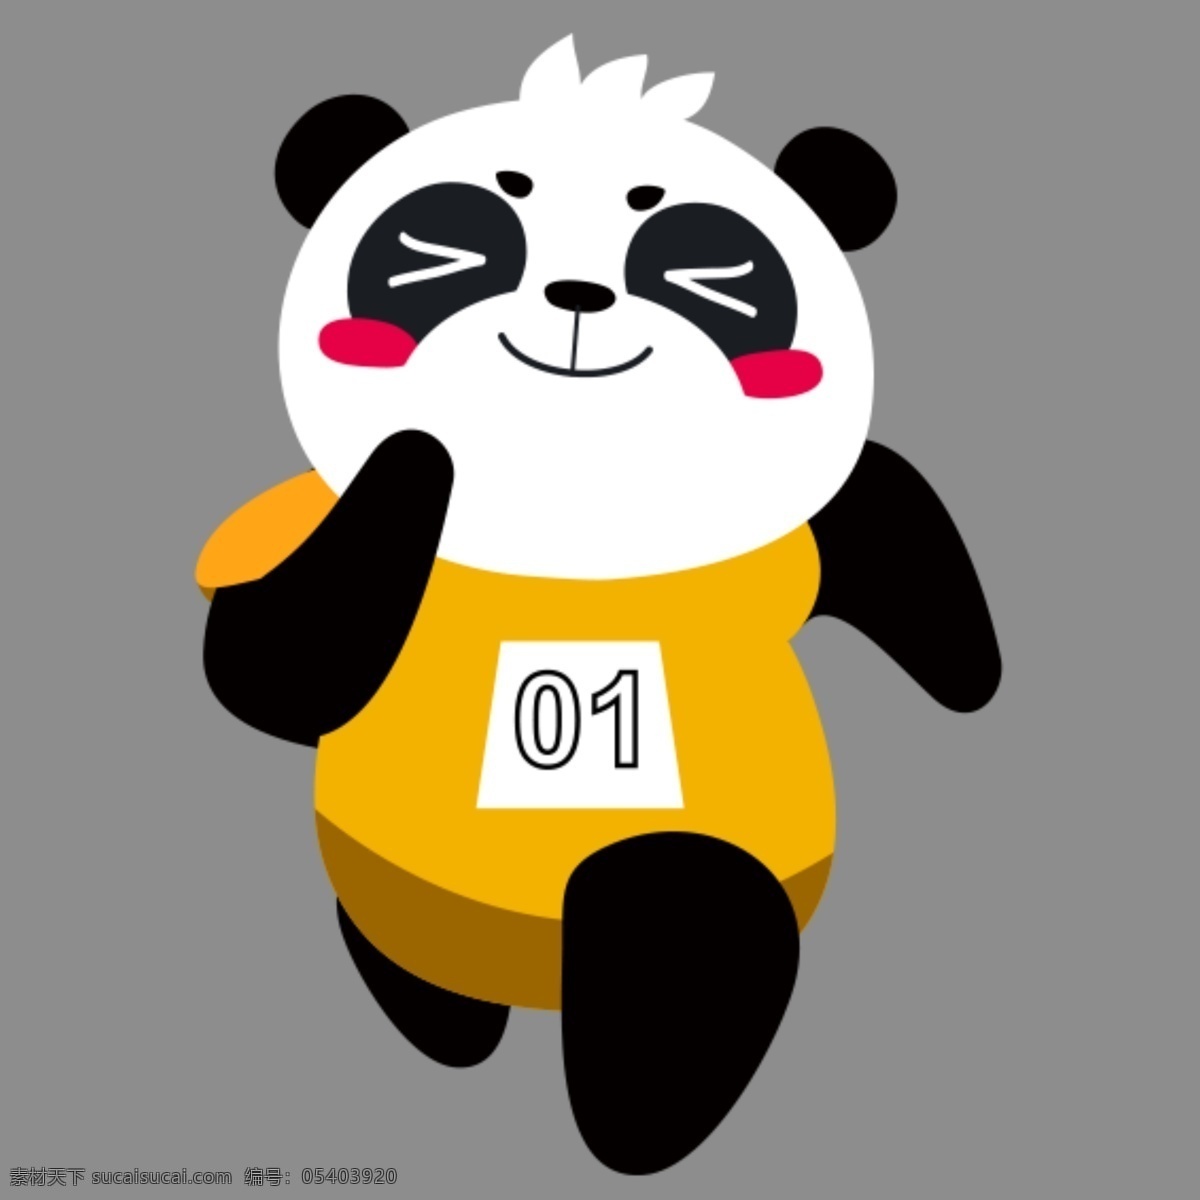 奔跑的熊猫 熊猫 跑步 可爱熊猫 熊猫素材 高清熊猫